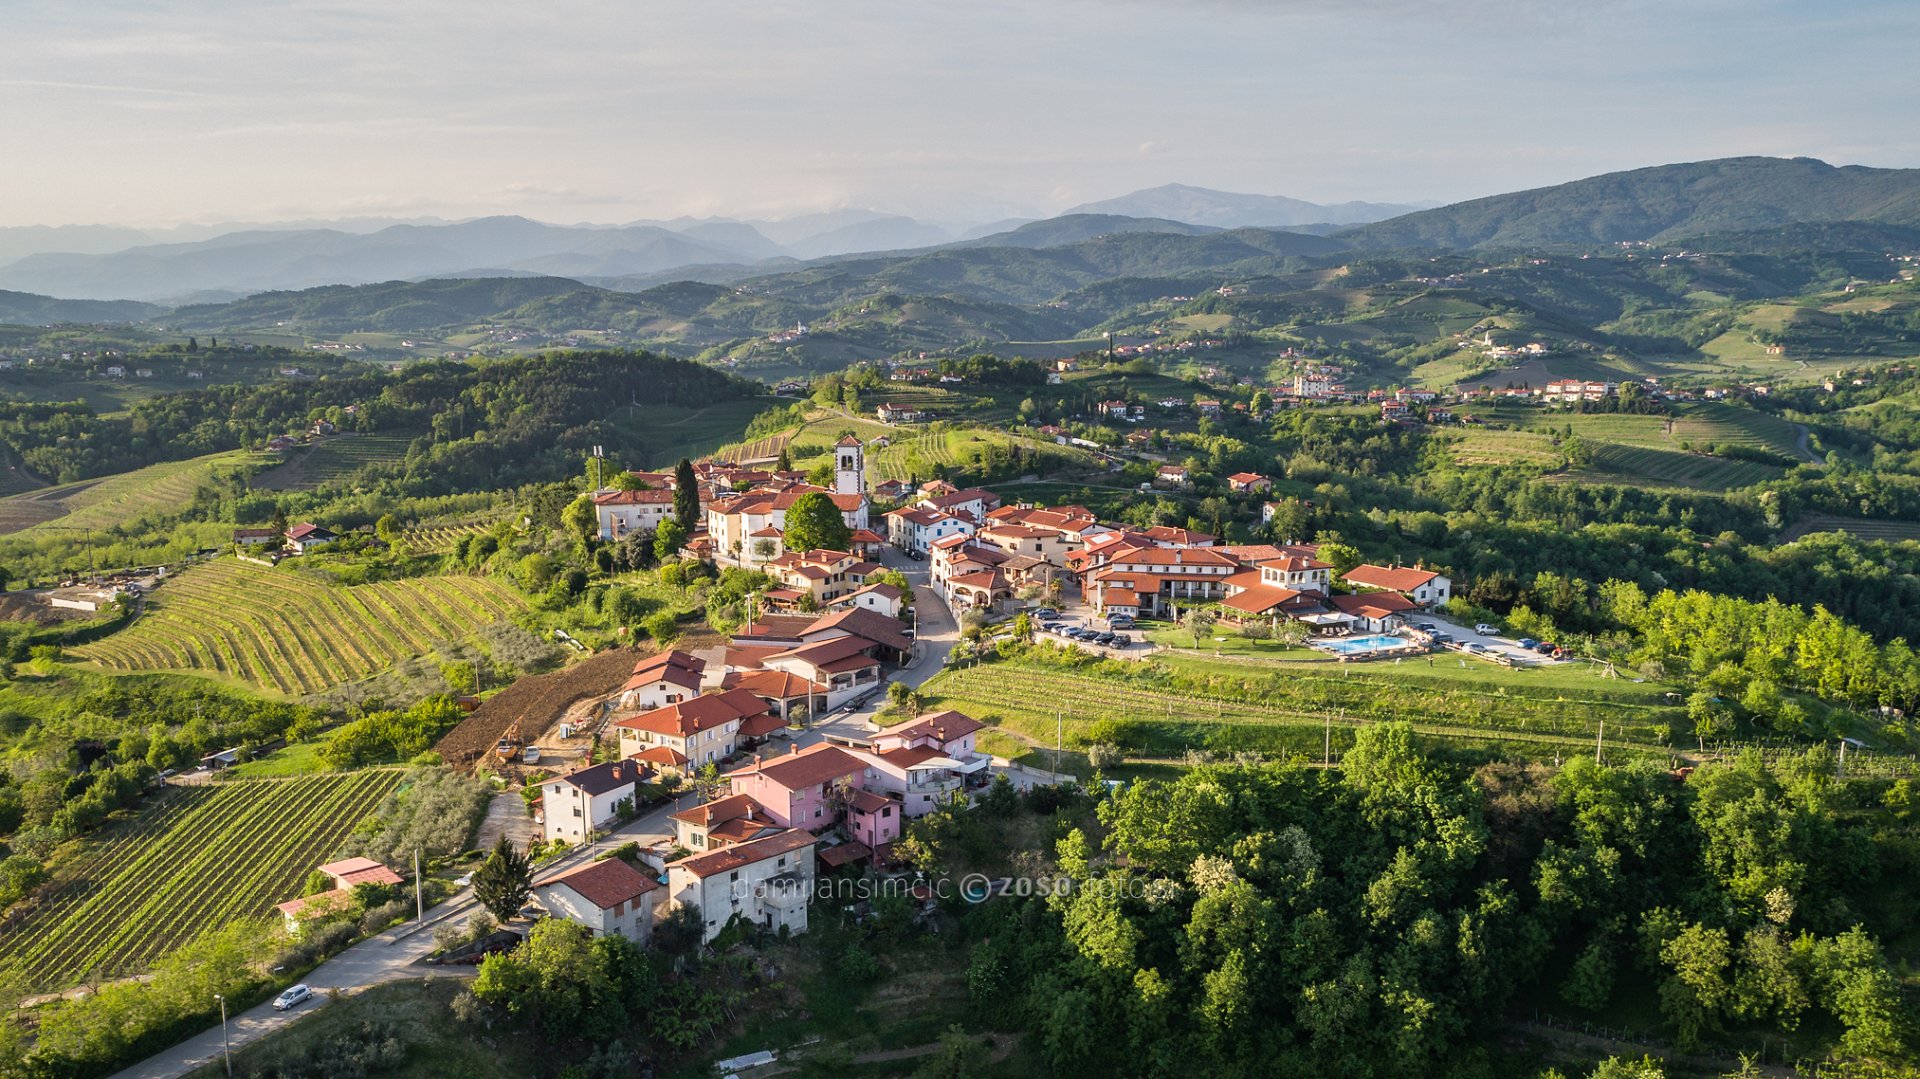 Obiščite najboljšo malo kongresno destinacijo v regiji Alpe-Jadran